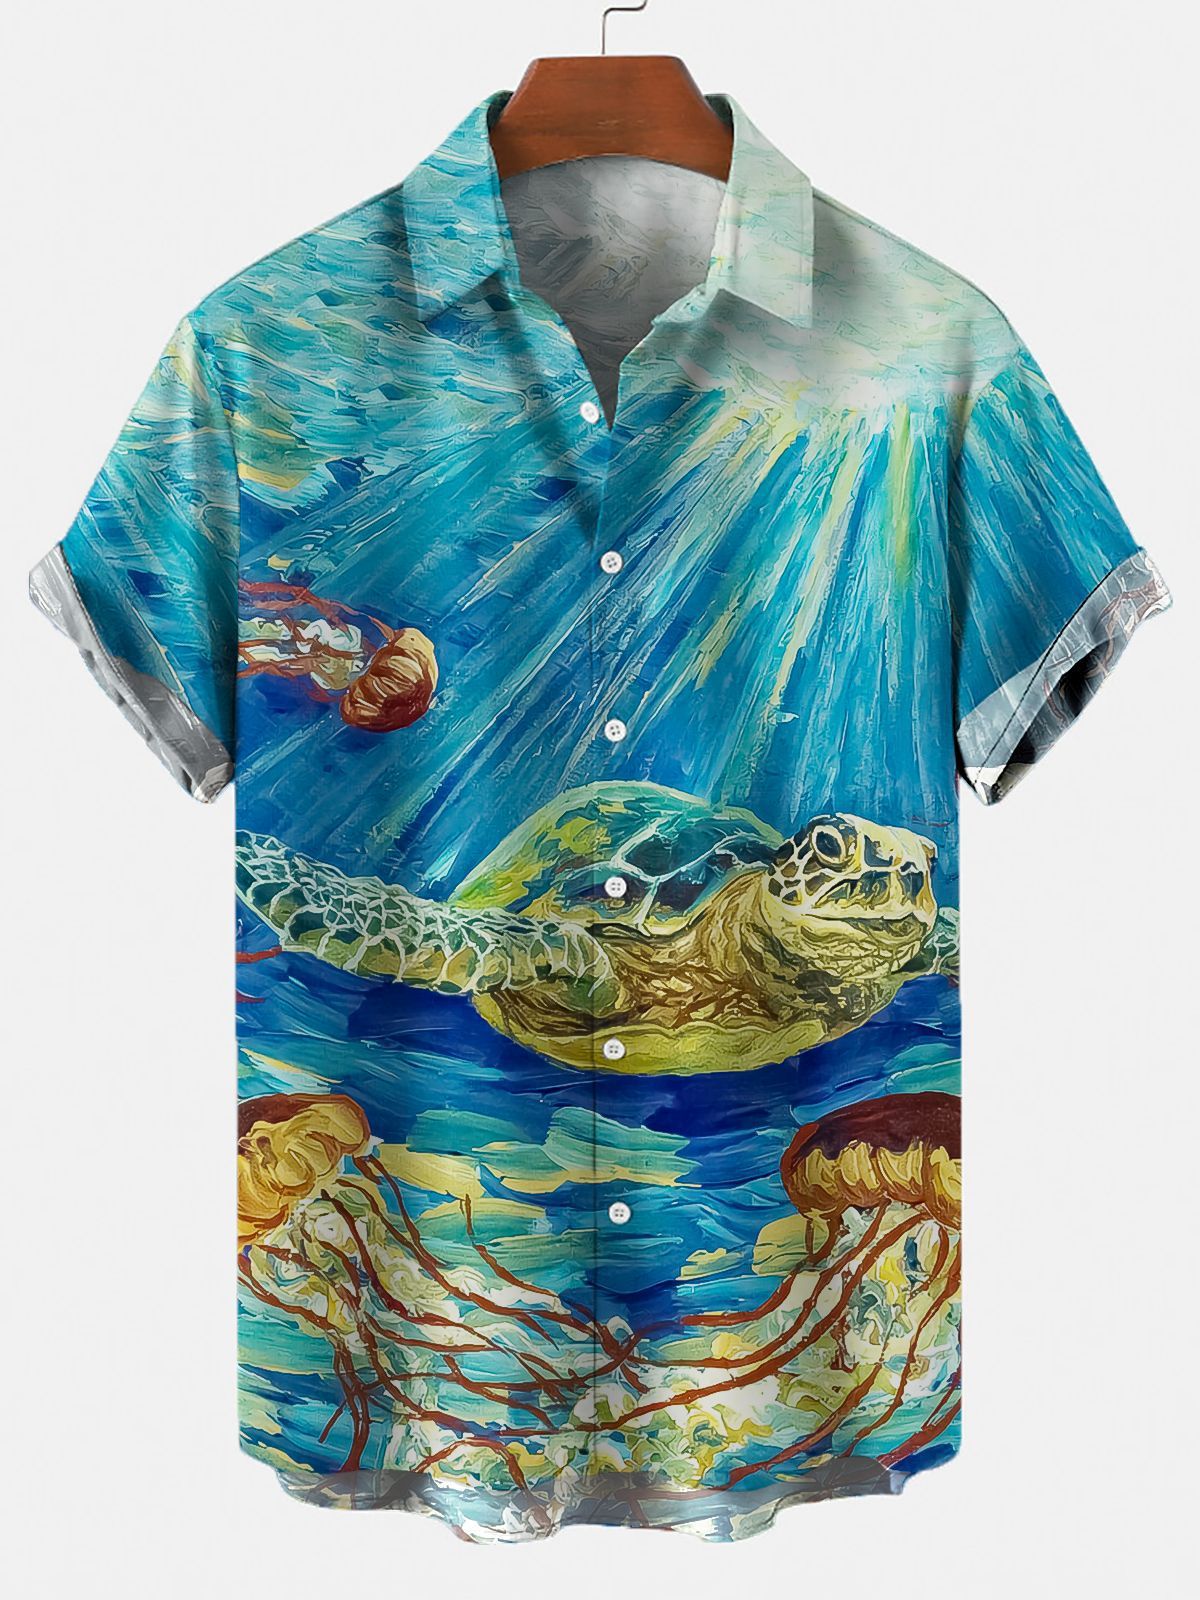 Turtle Digital Printed Shirt Men's Top Shirt